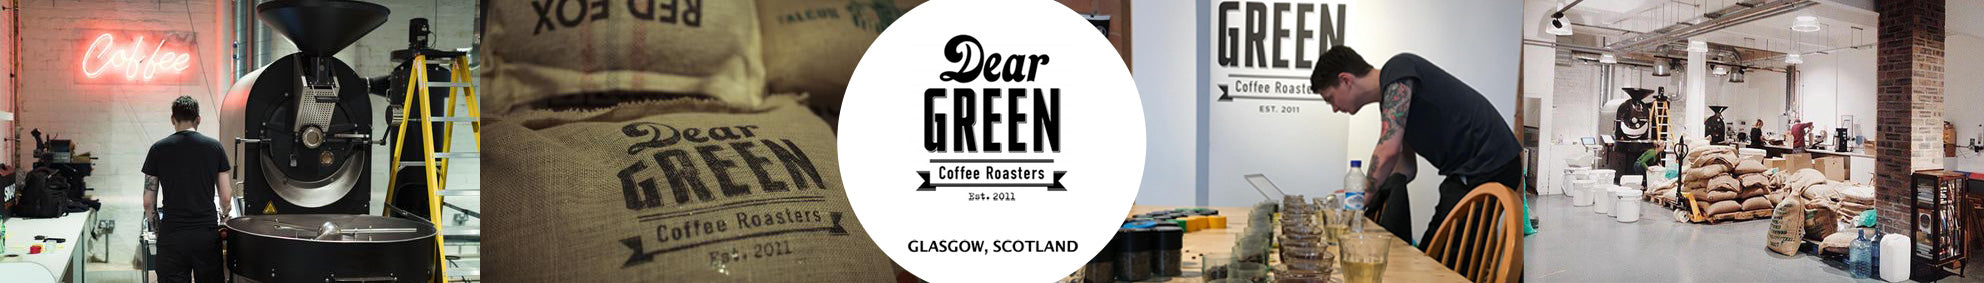 Subscription Coffee Roaster - Dear Green Coffee Roasters